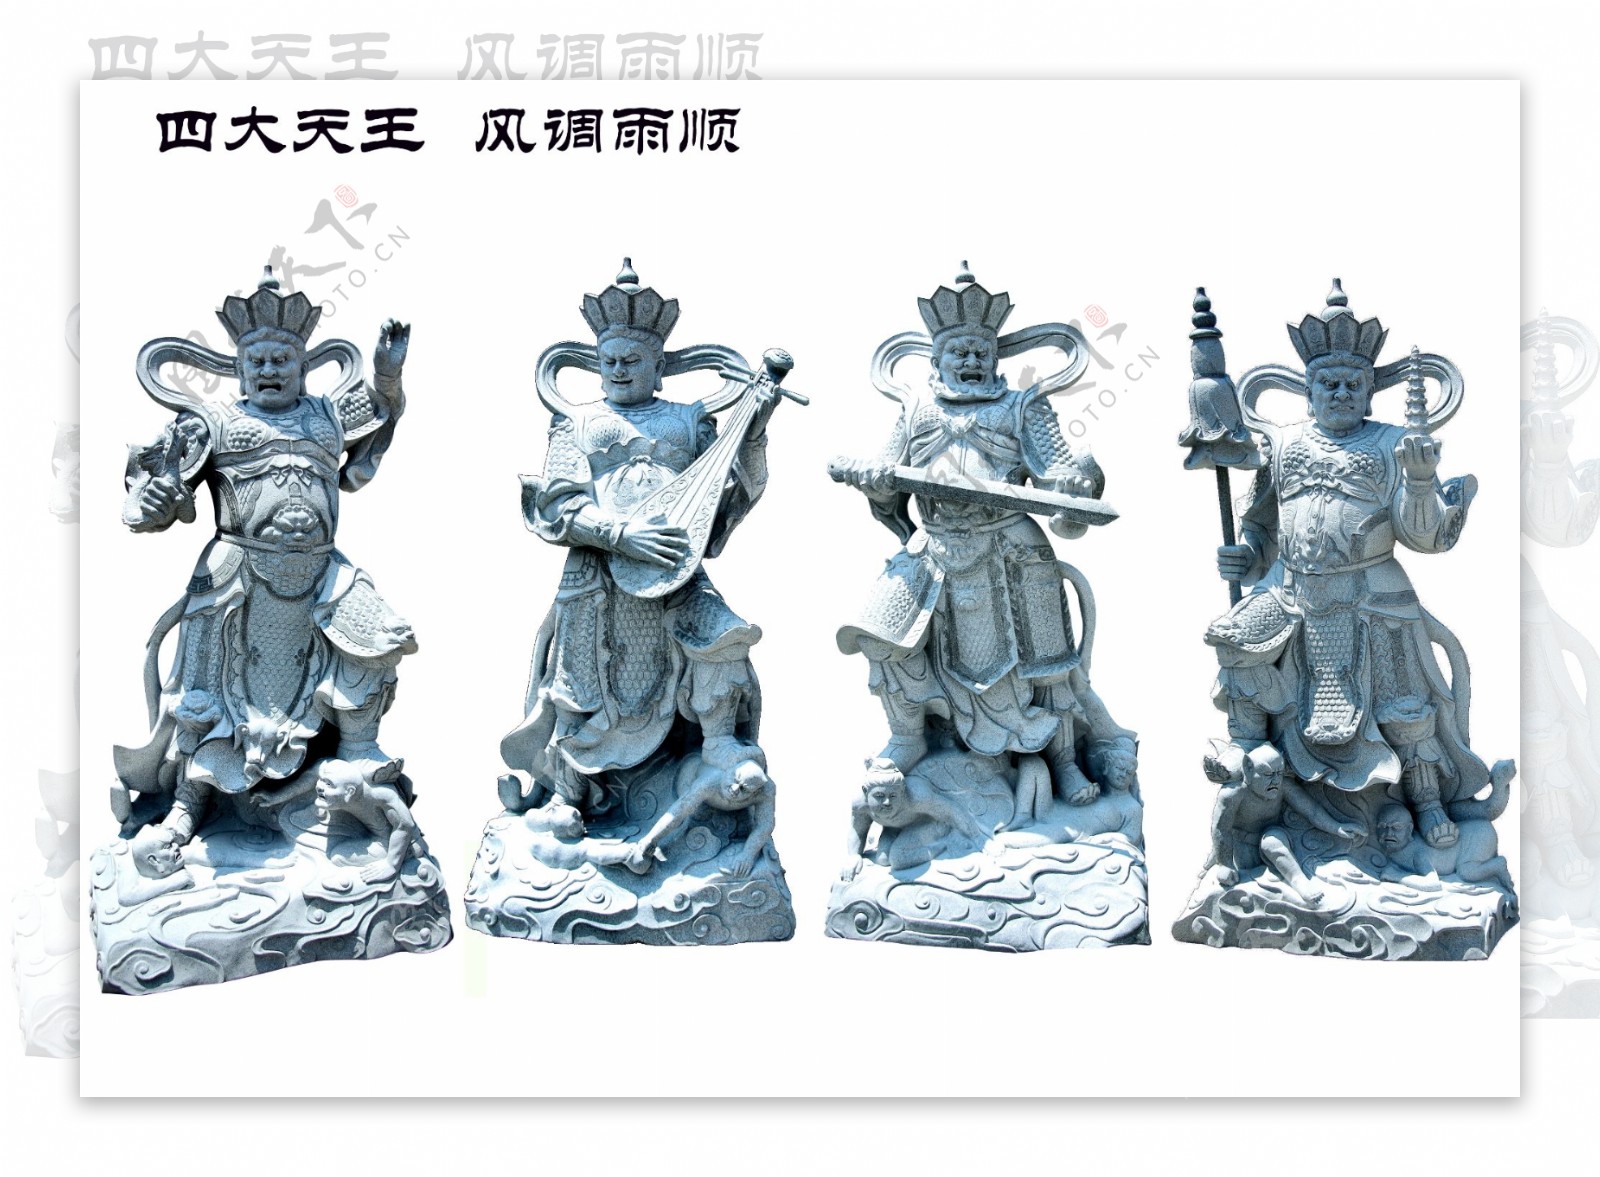 传统石雕四大天王图片